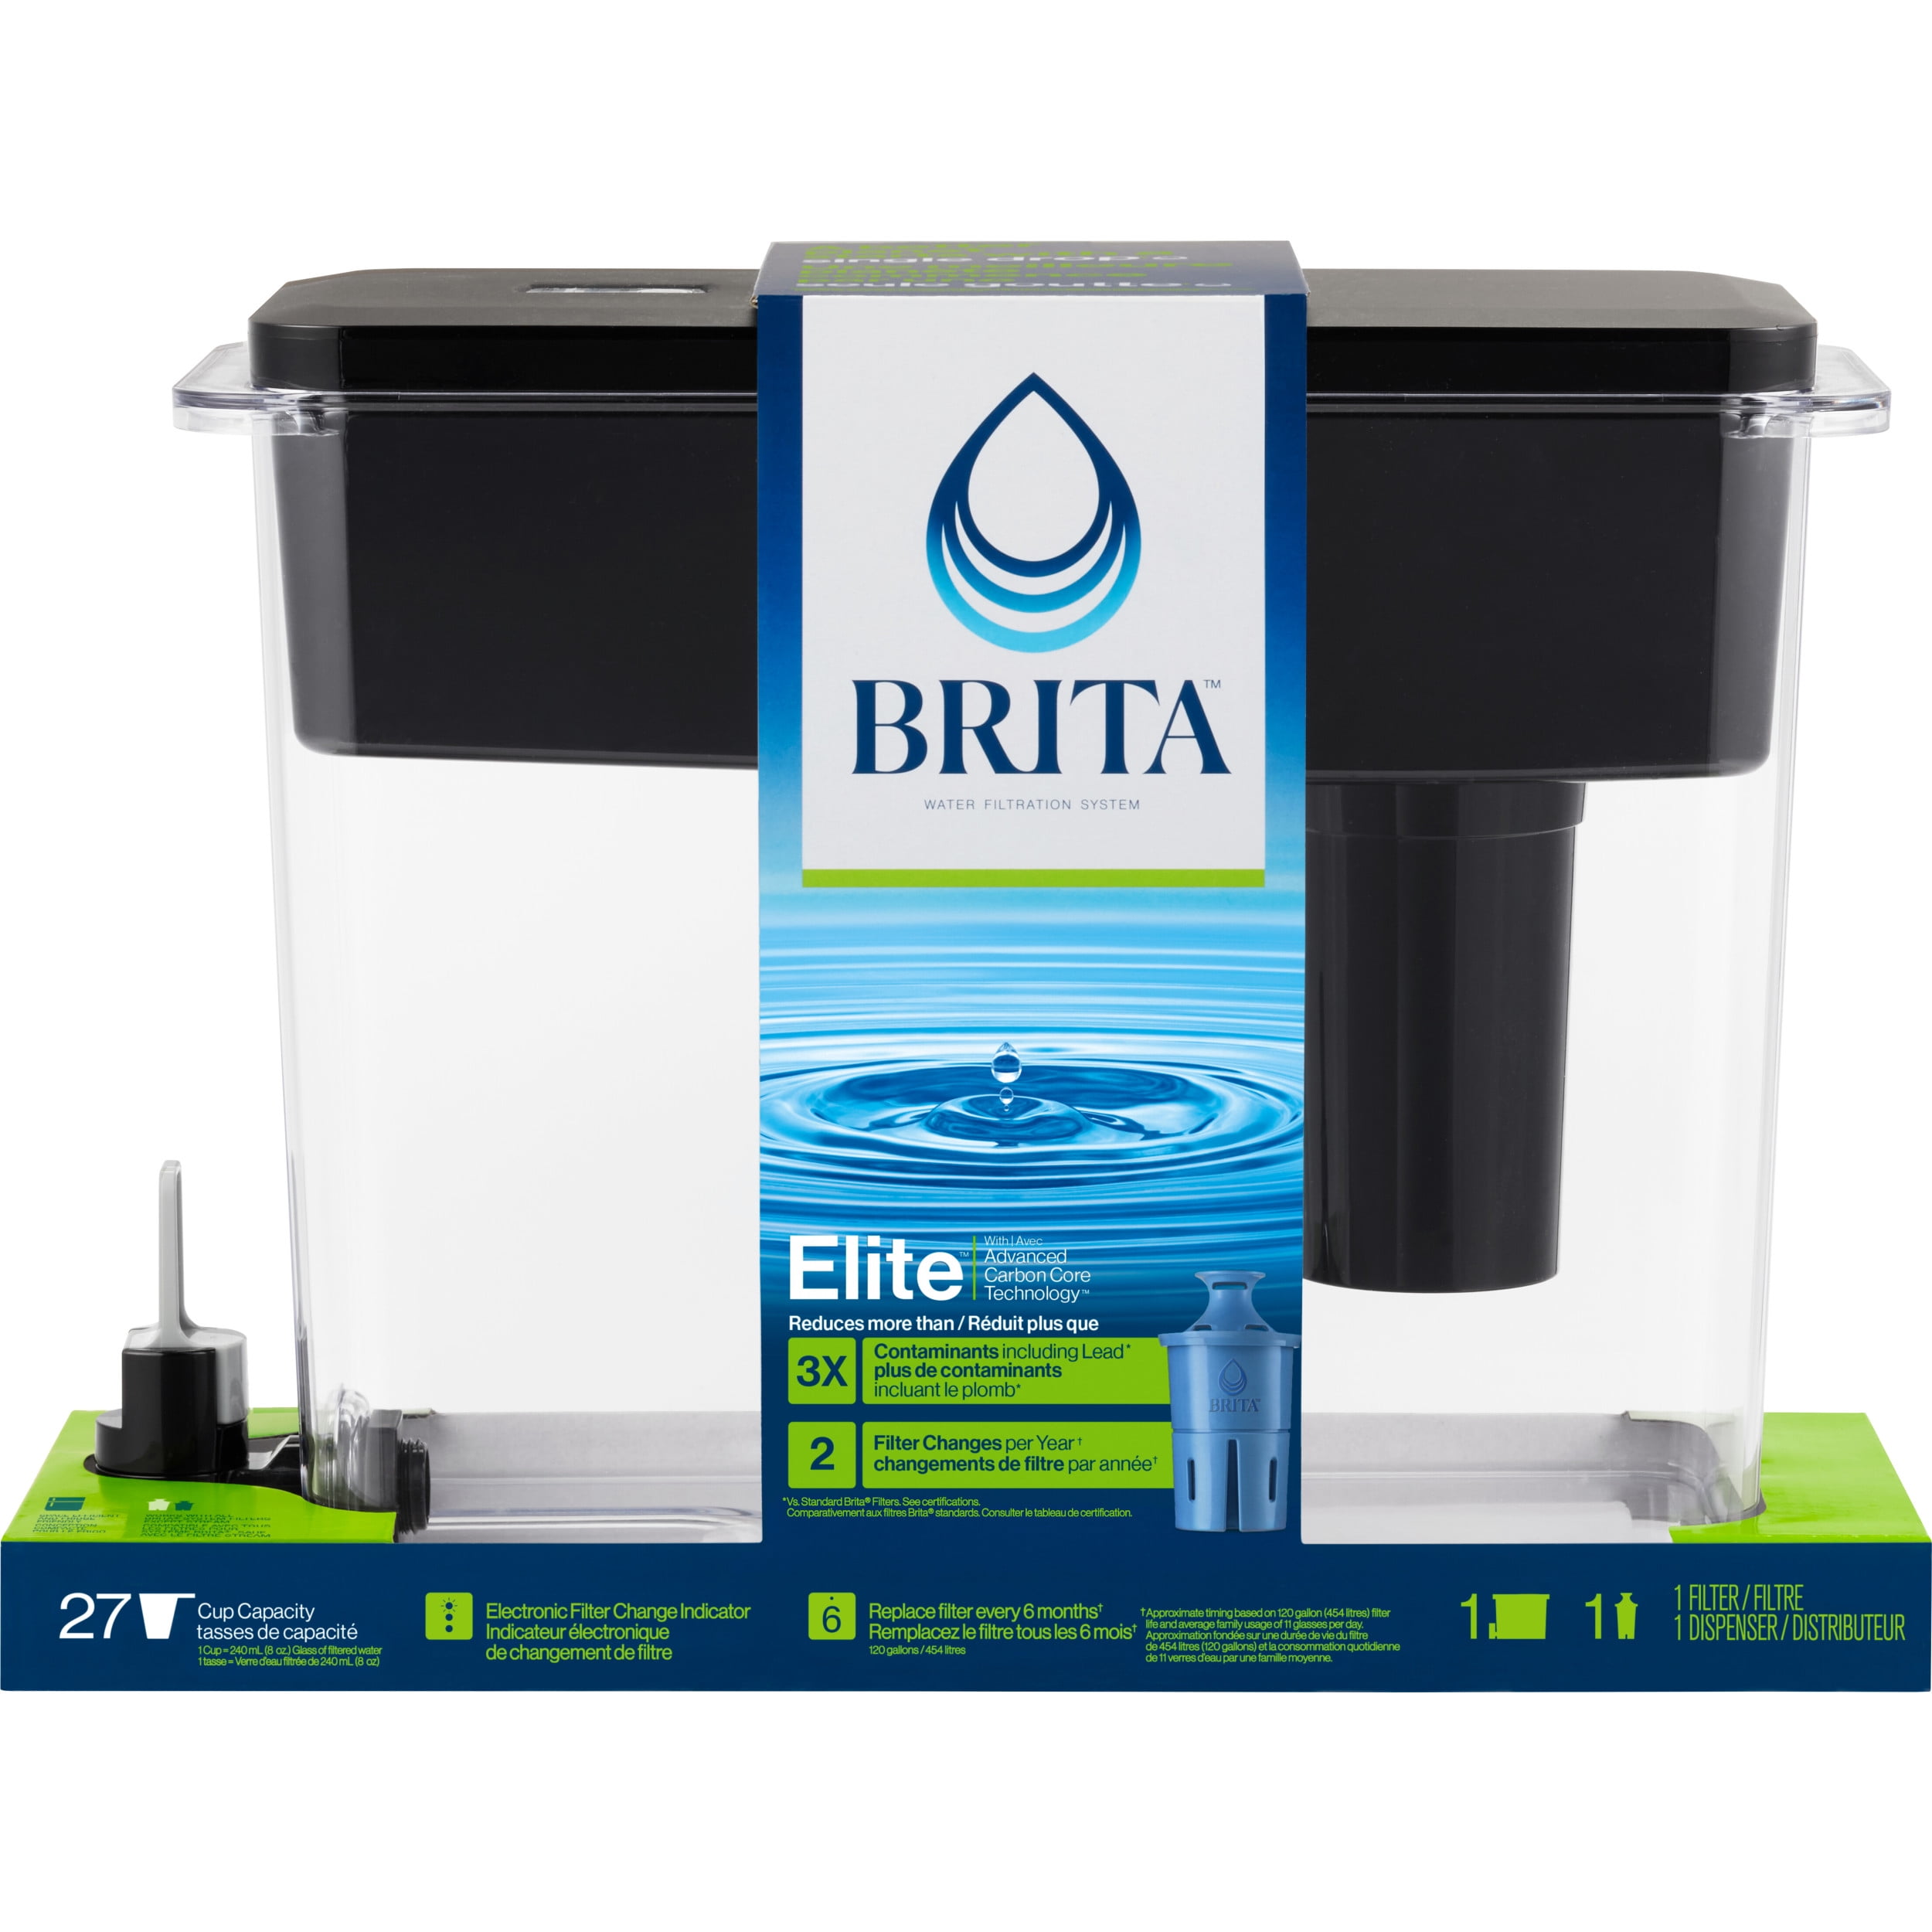 Pack de 9 filtres à eau Brita Maxtra+ Universal